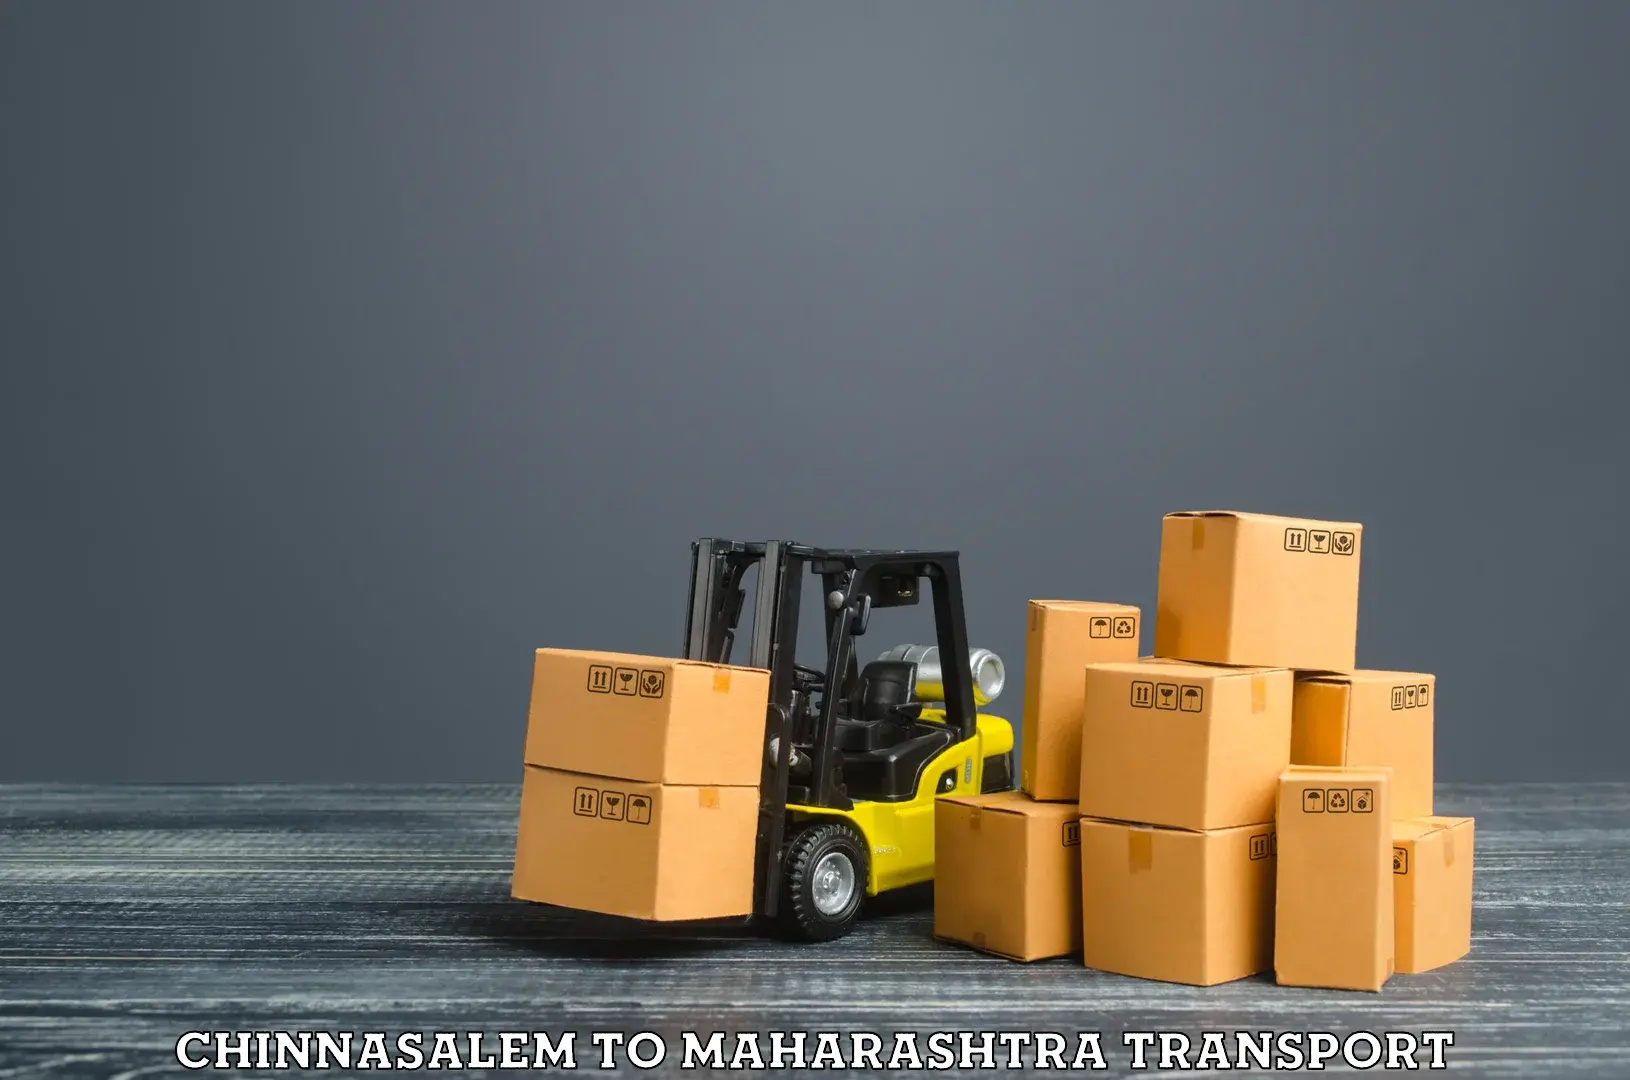 Delivery service Chinnasalem to Maharashtra